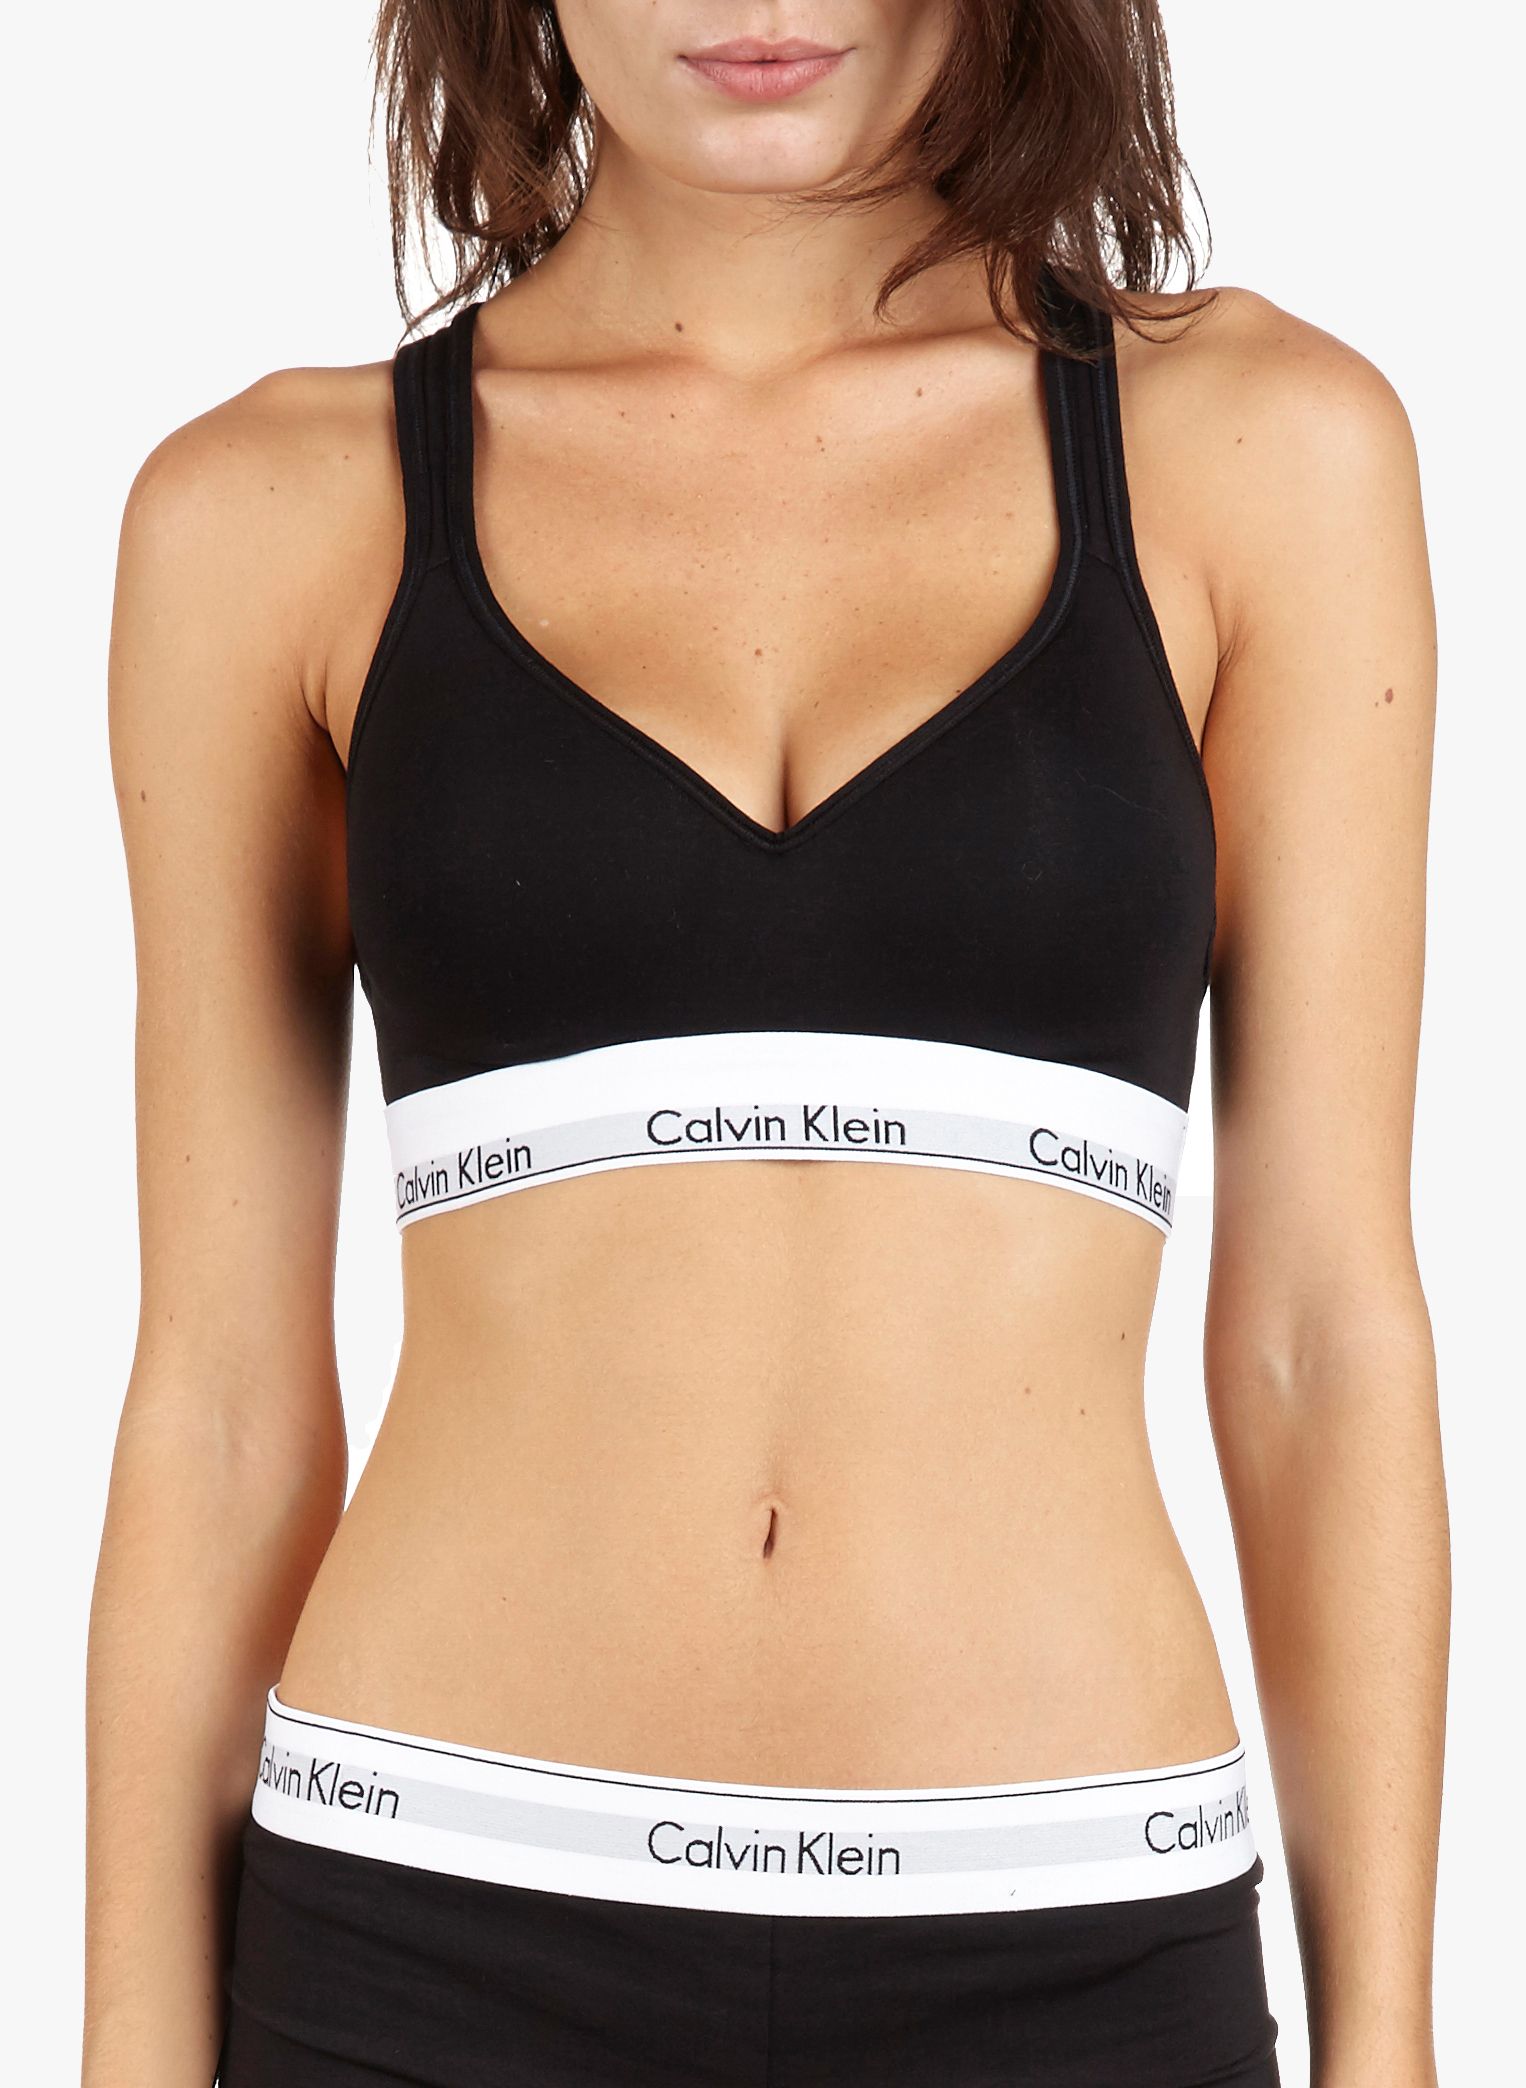 Black 80                  EU discount 58% WOMEN FASHION Underwear & Nightwear Sport bra Calvin Klein Sport bra 